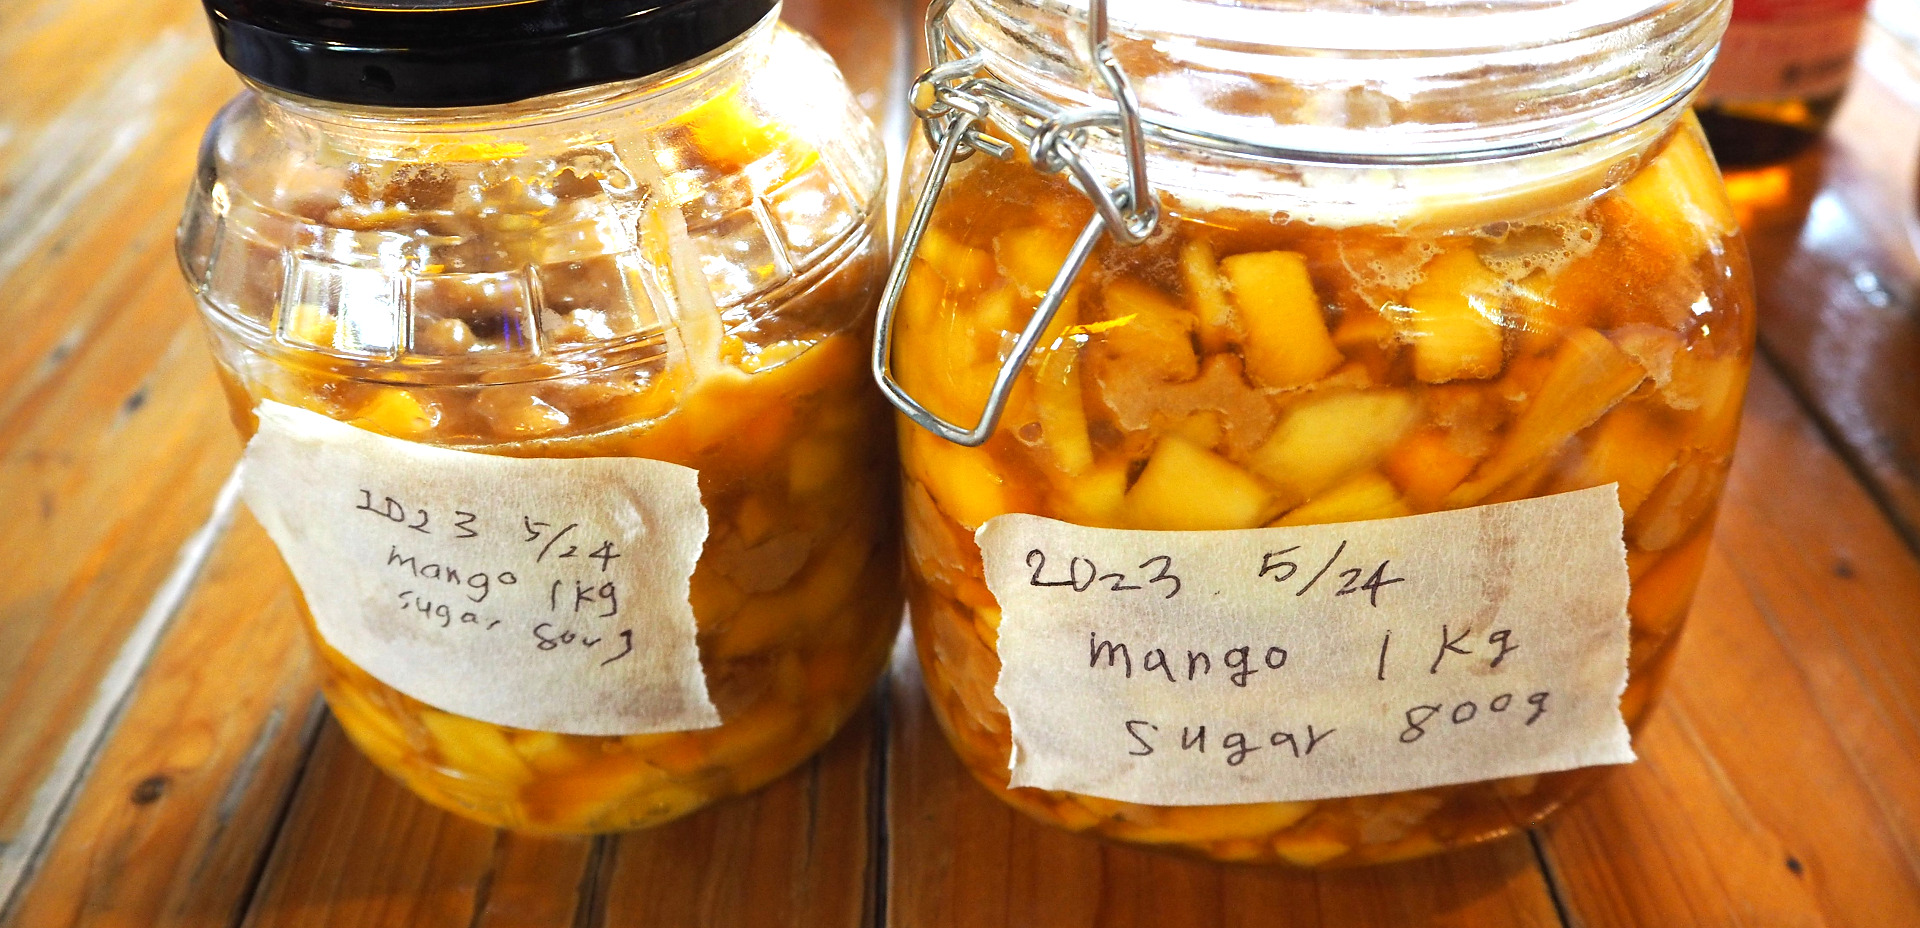 腸を整える美味しい習慣。タイのフルーツを使った、発酵ジュース作り